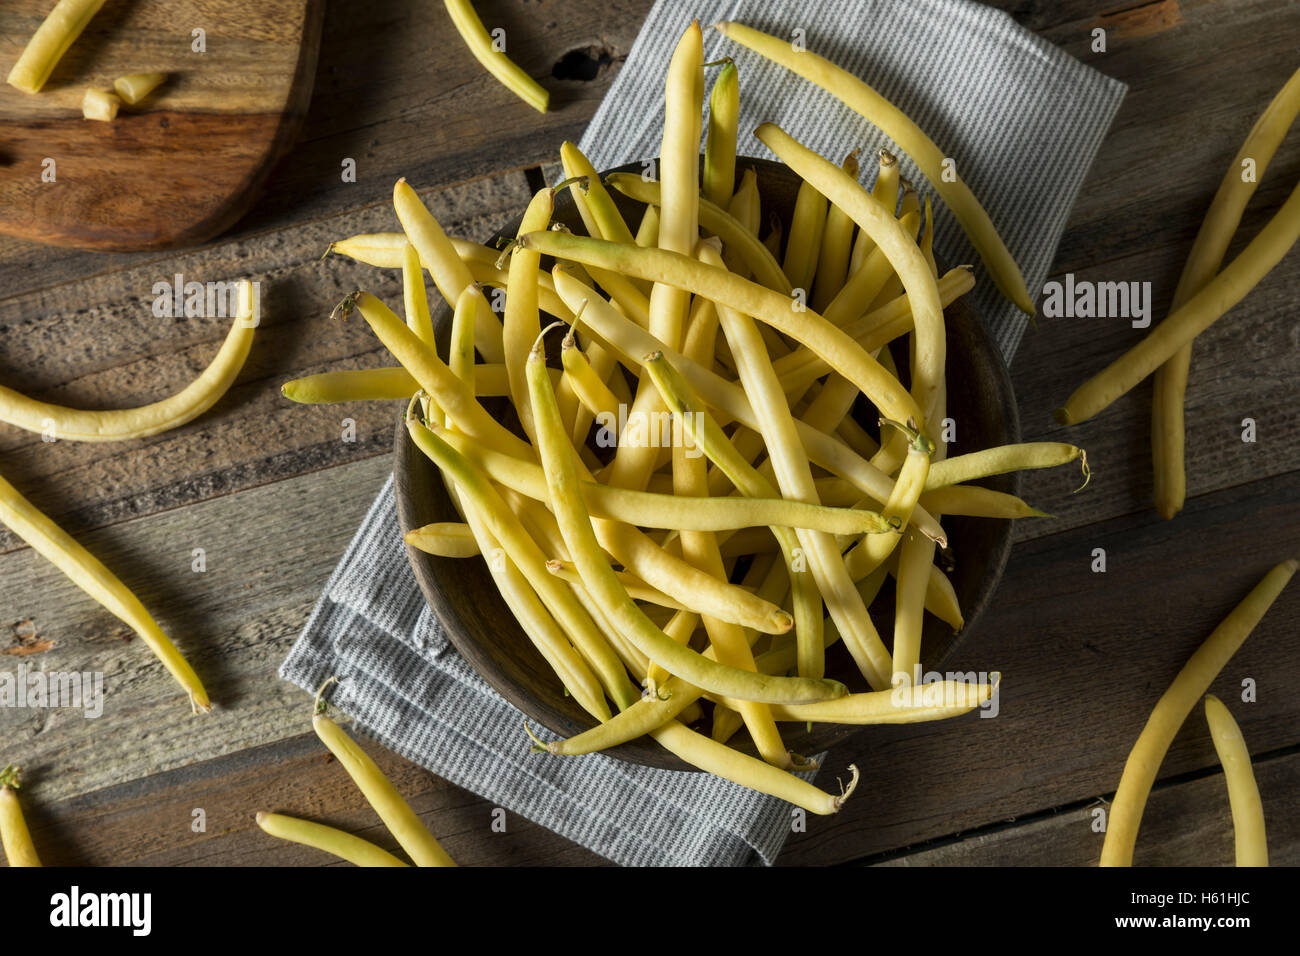 Materie organiche cera gialla fagioli pronti per cucinare Foto Stock